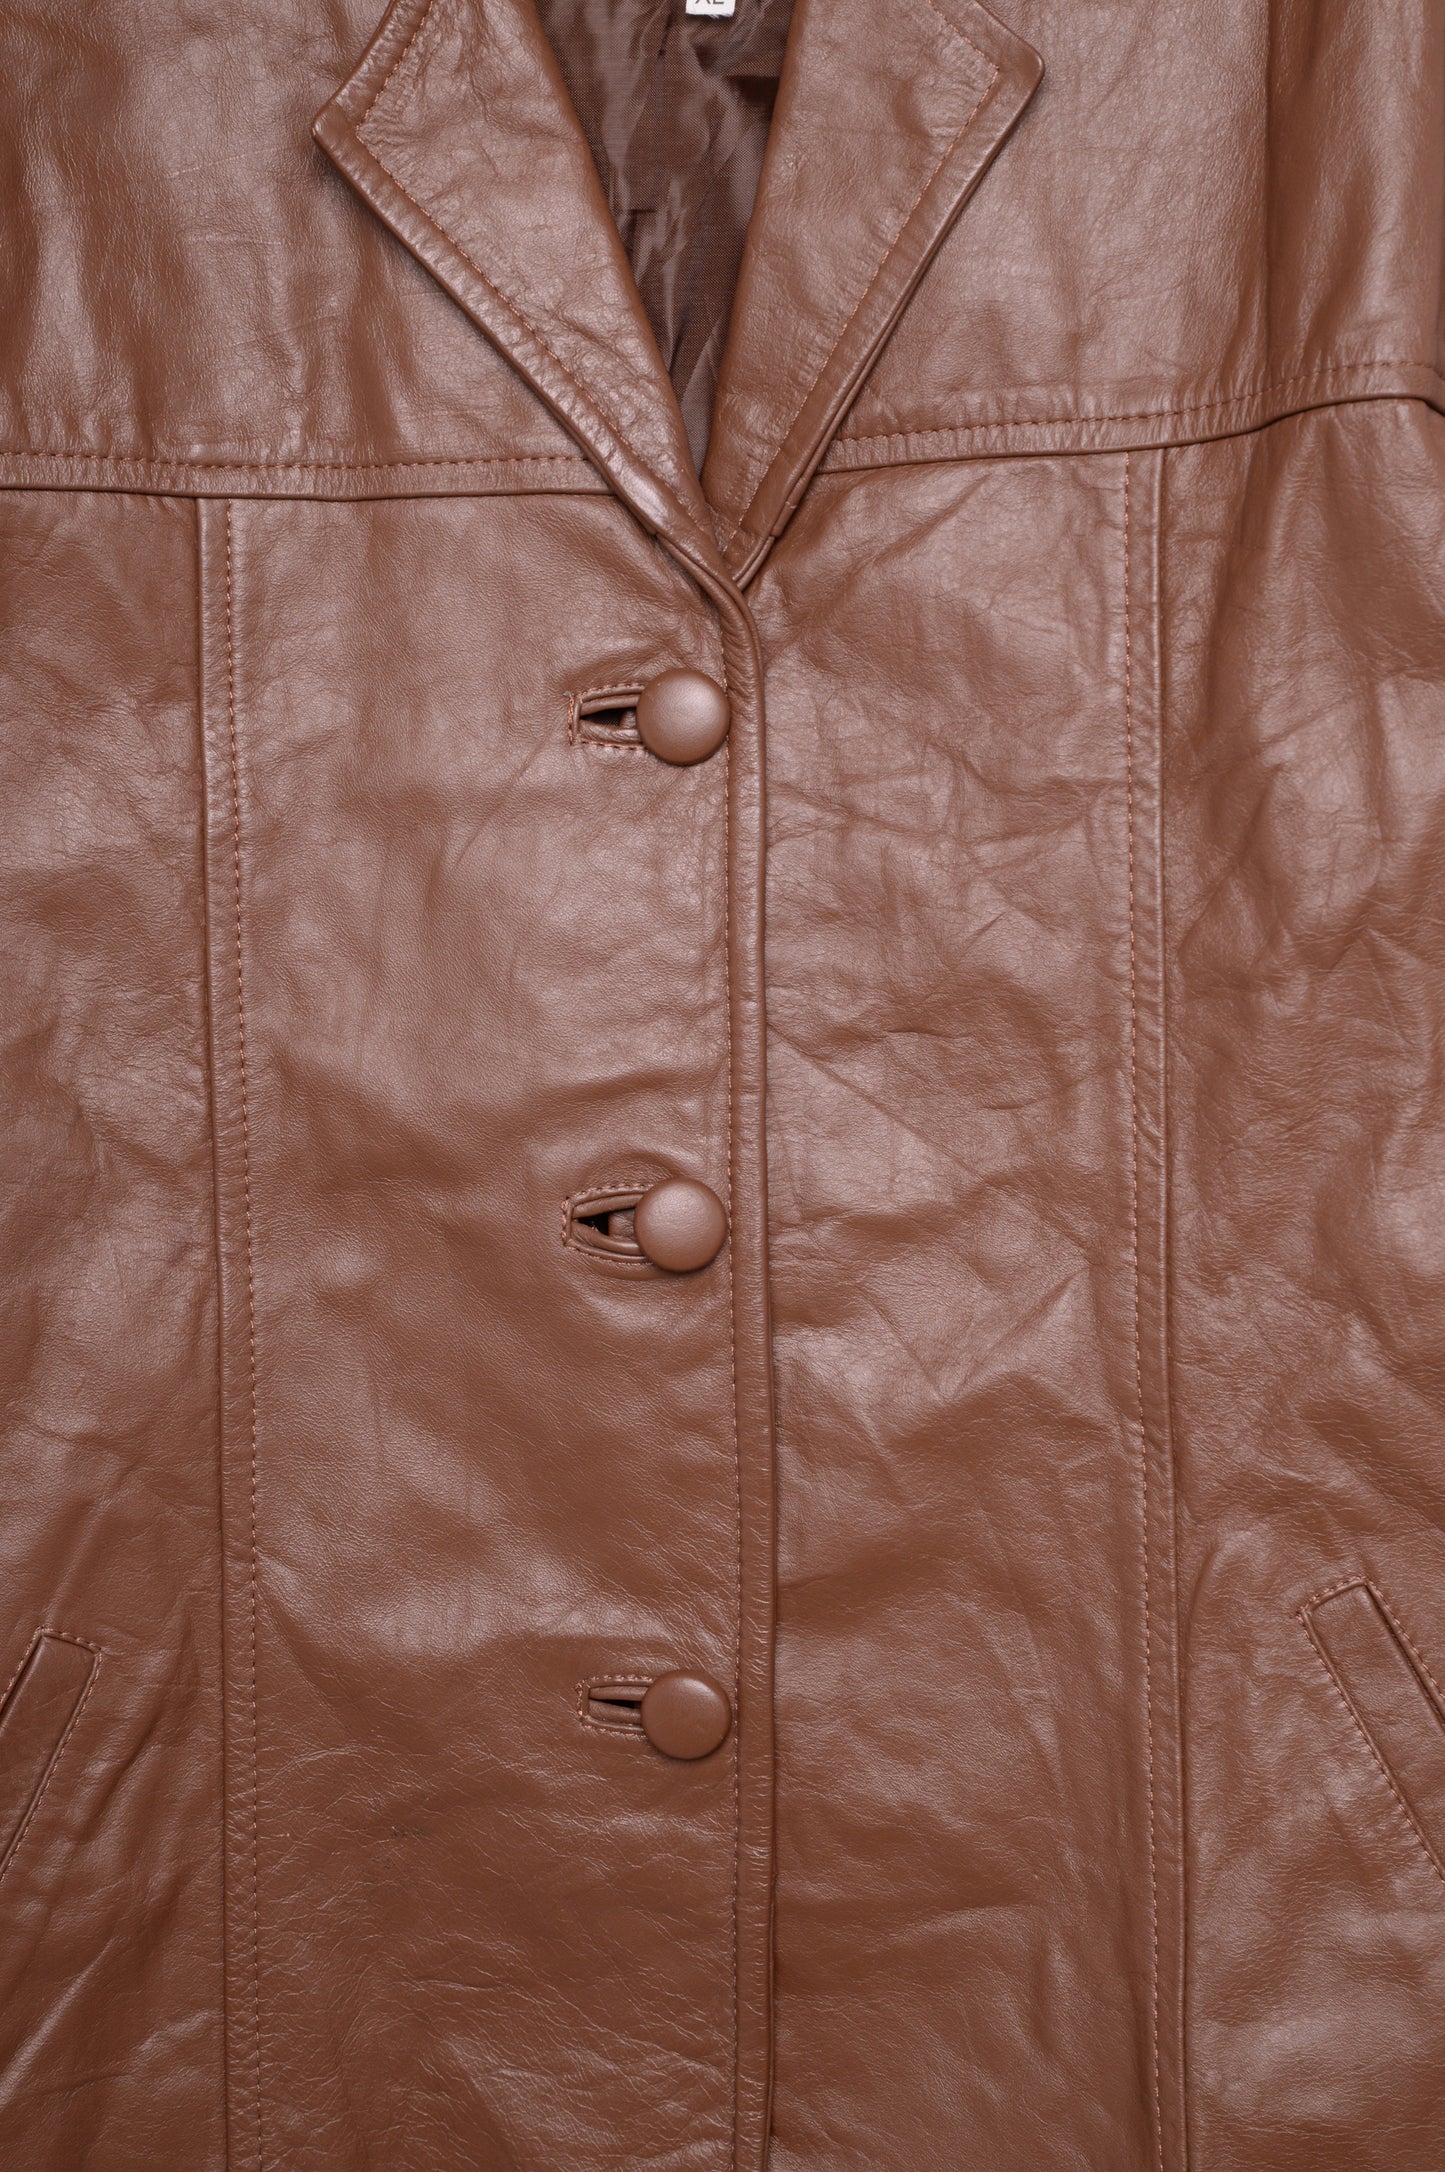 1970s Caramel Leather Jacket